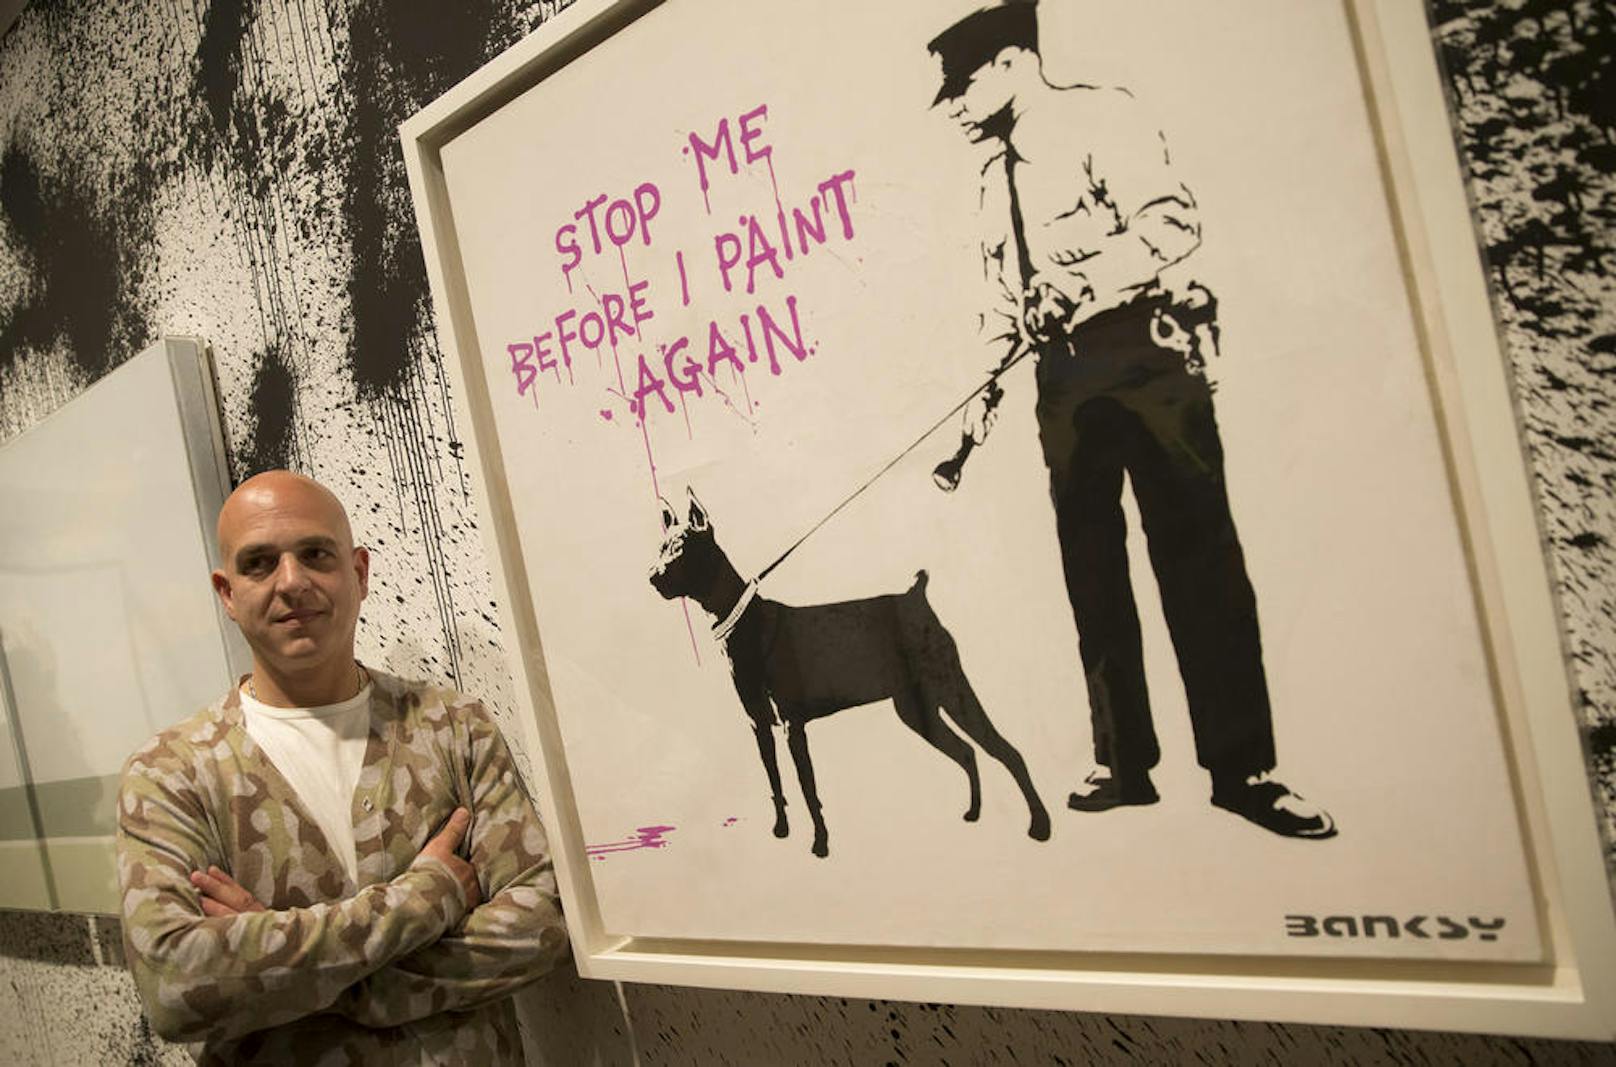 Dieser Mann im Bild ist NICHT Banksy, sondern posiert nur neben einem Werk des Künstler-Phantoms.